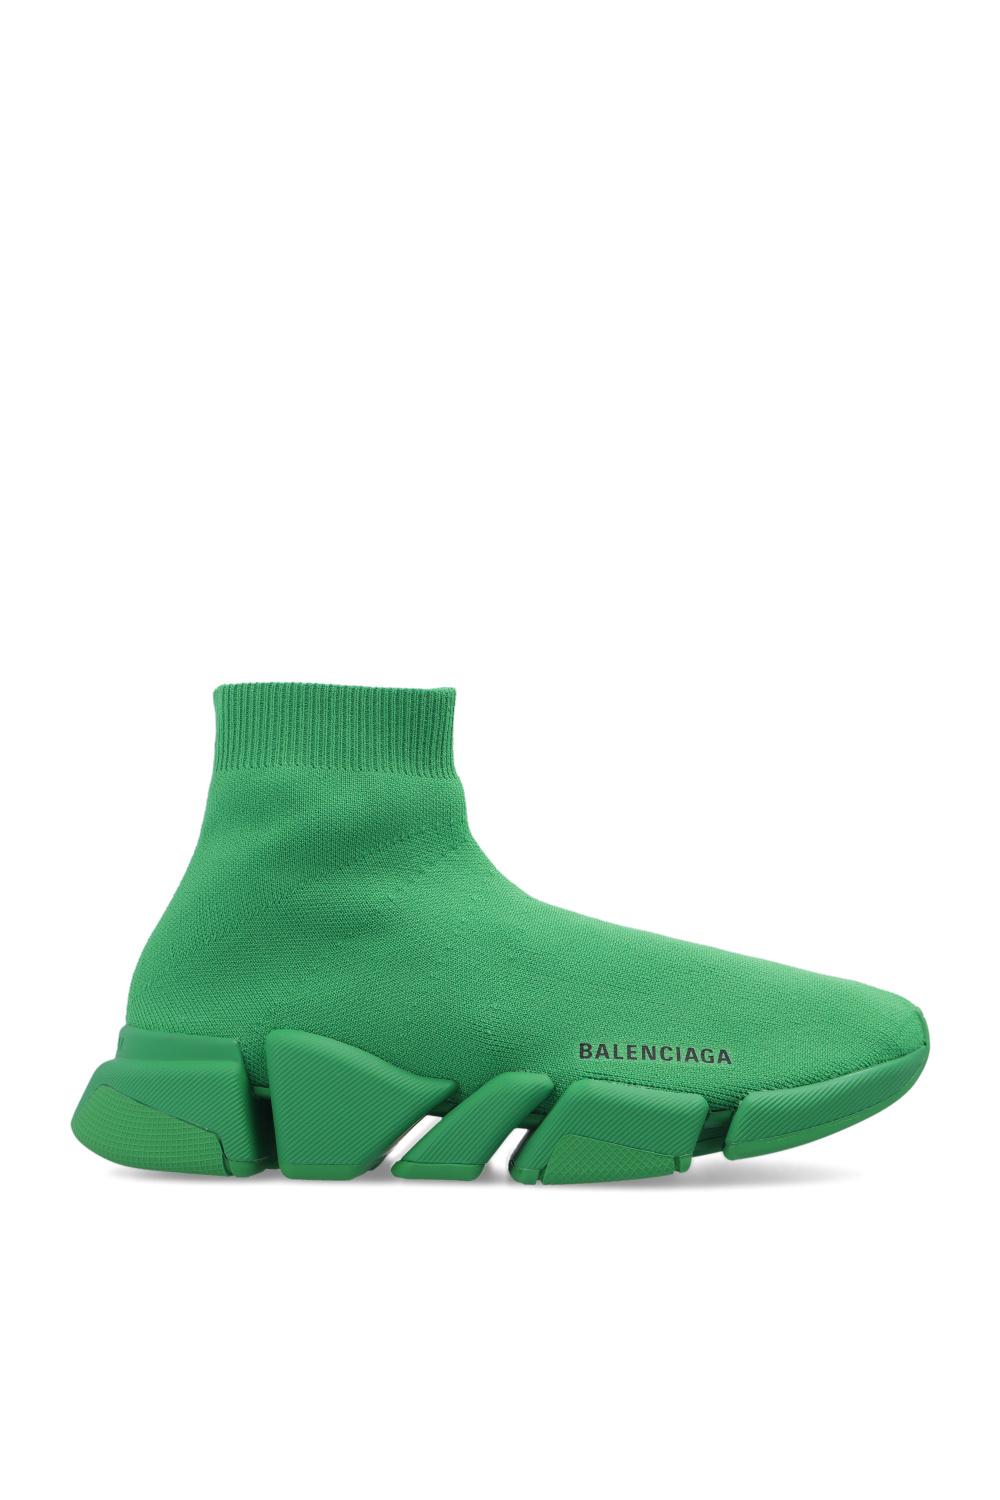 Balenciaga 'speed 2.0 Lt' Socks Sneakers in Green | Lyst